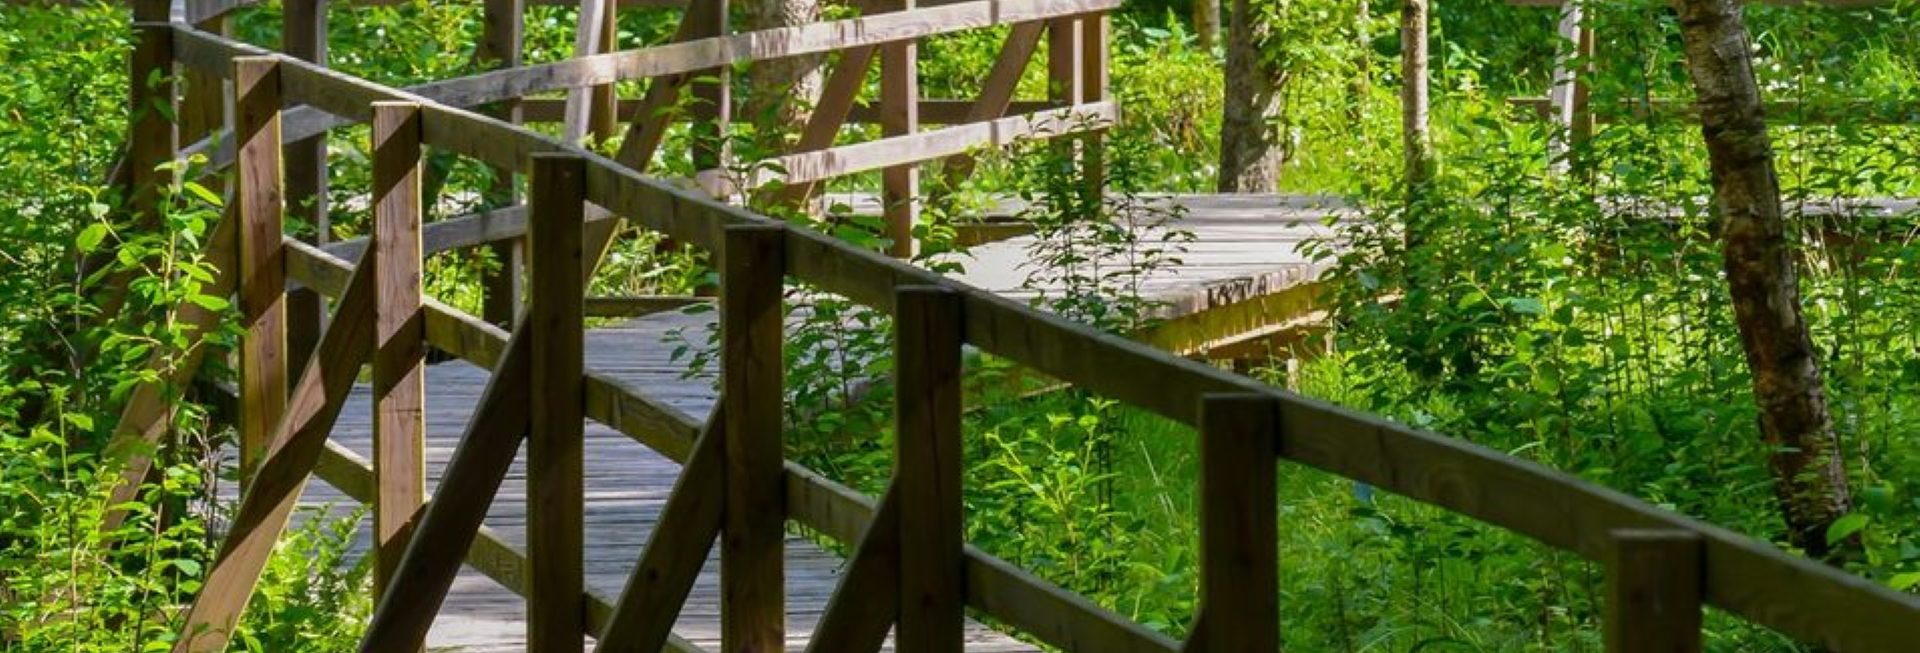 Zdjęcie zapraszające do Arboretum w Kudypach pod Olsztynem na Spotkanie - Zakochaj się w leśnym ogrodzie botanicznym w Kudypach.  